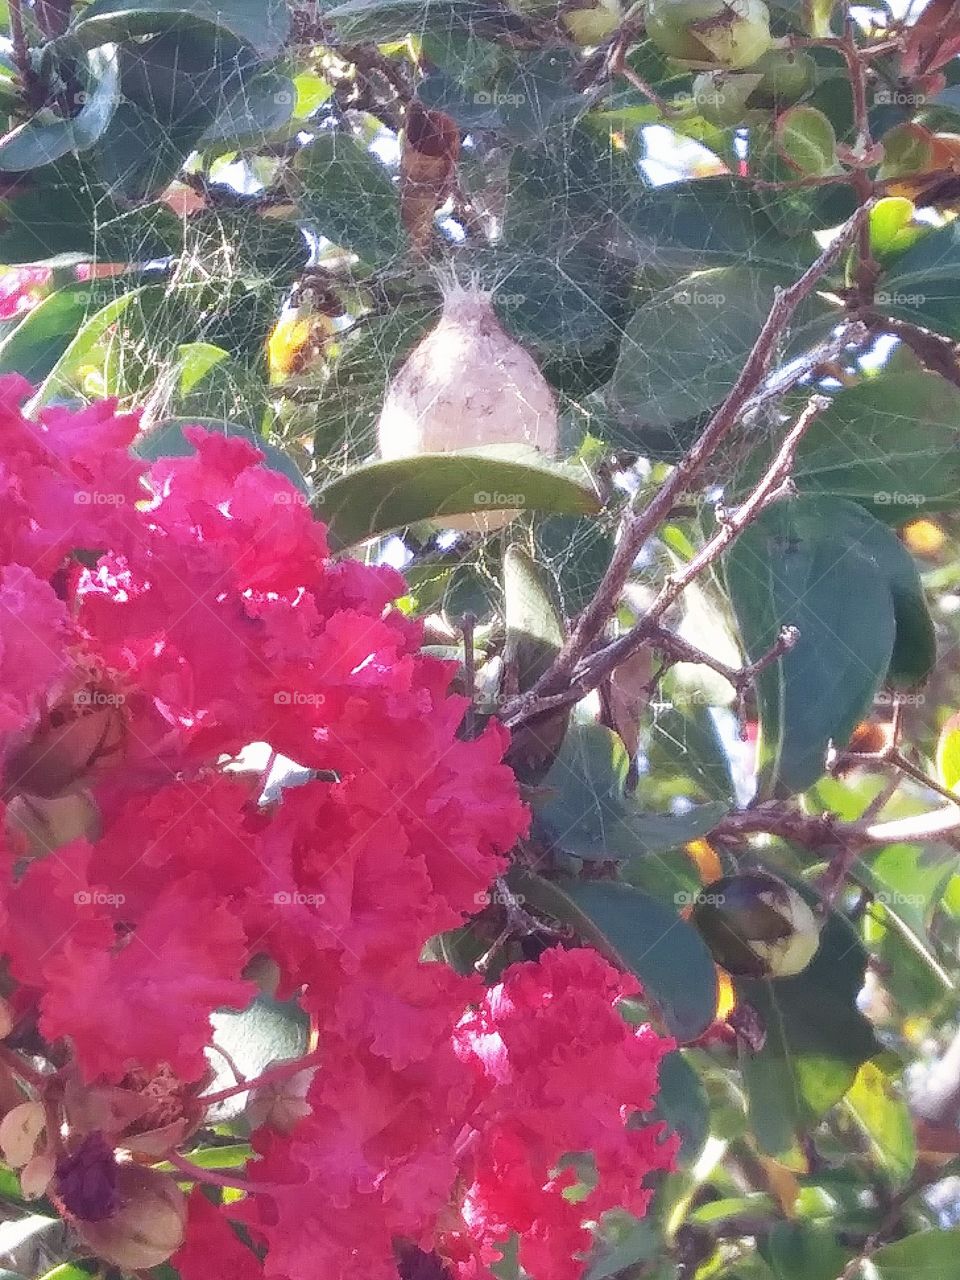 spider egg sack in a myrtle tree